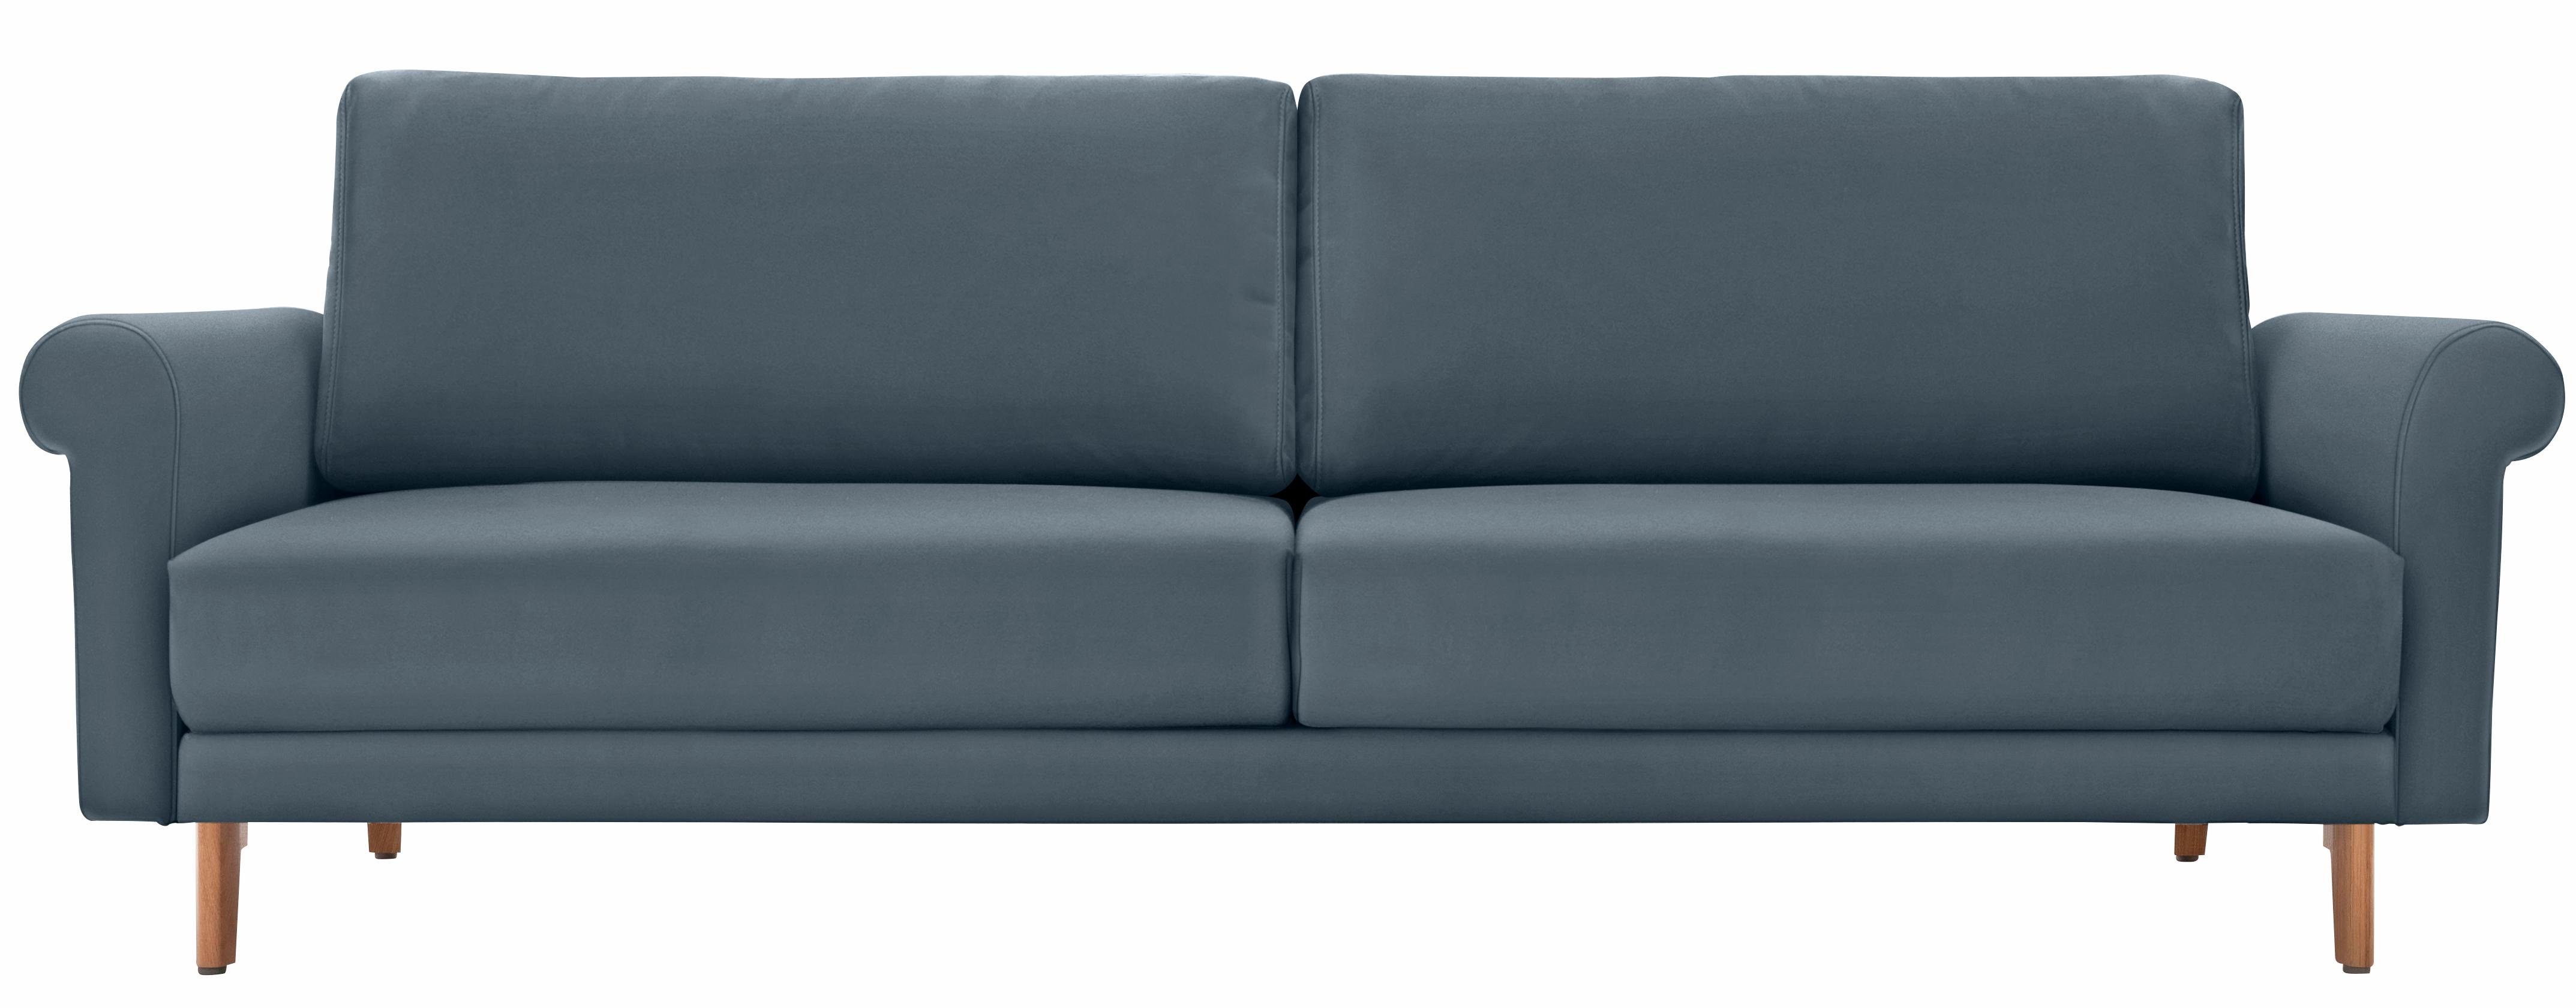 hülsta sofa 2-Sitzer hs.450, modern Landhaus, Füße in Nussbaum, Breite 168 cm